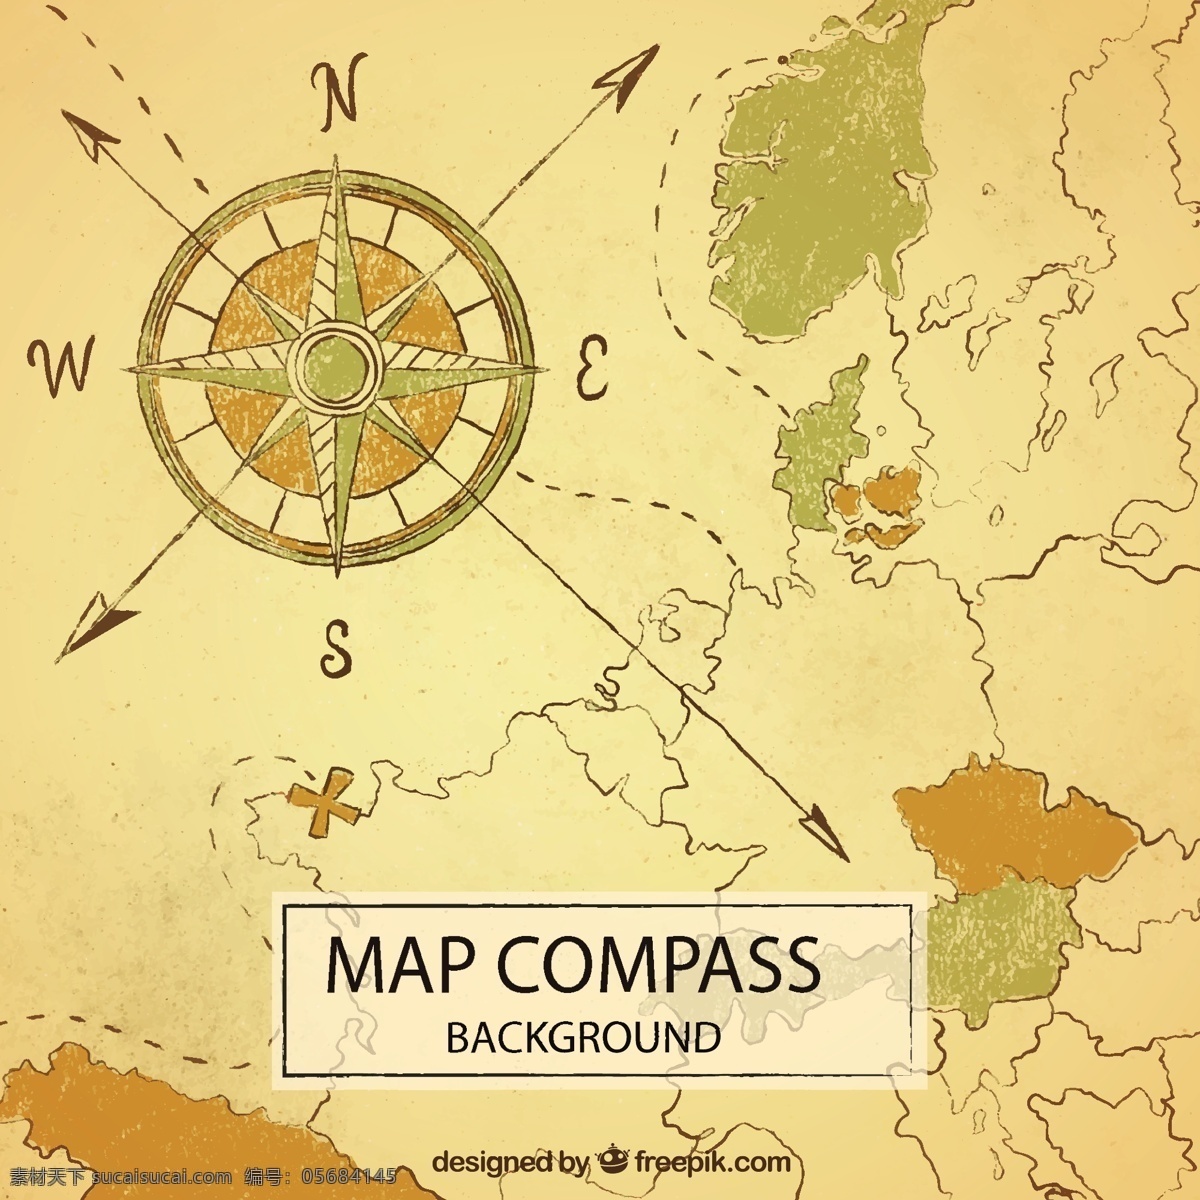 航海地形图 指南针地形图 地形图 指南针 导航地形图 航海图 海图